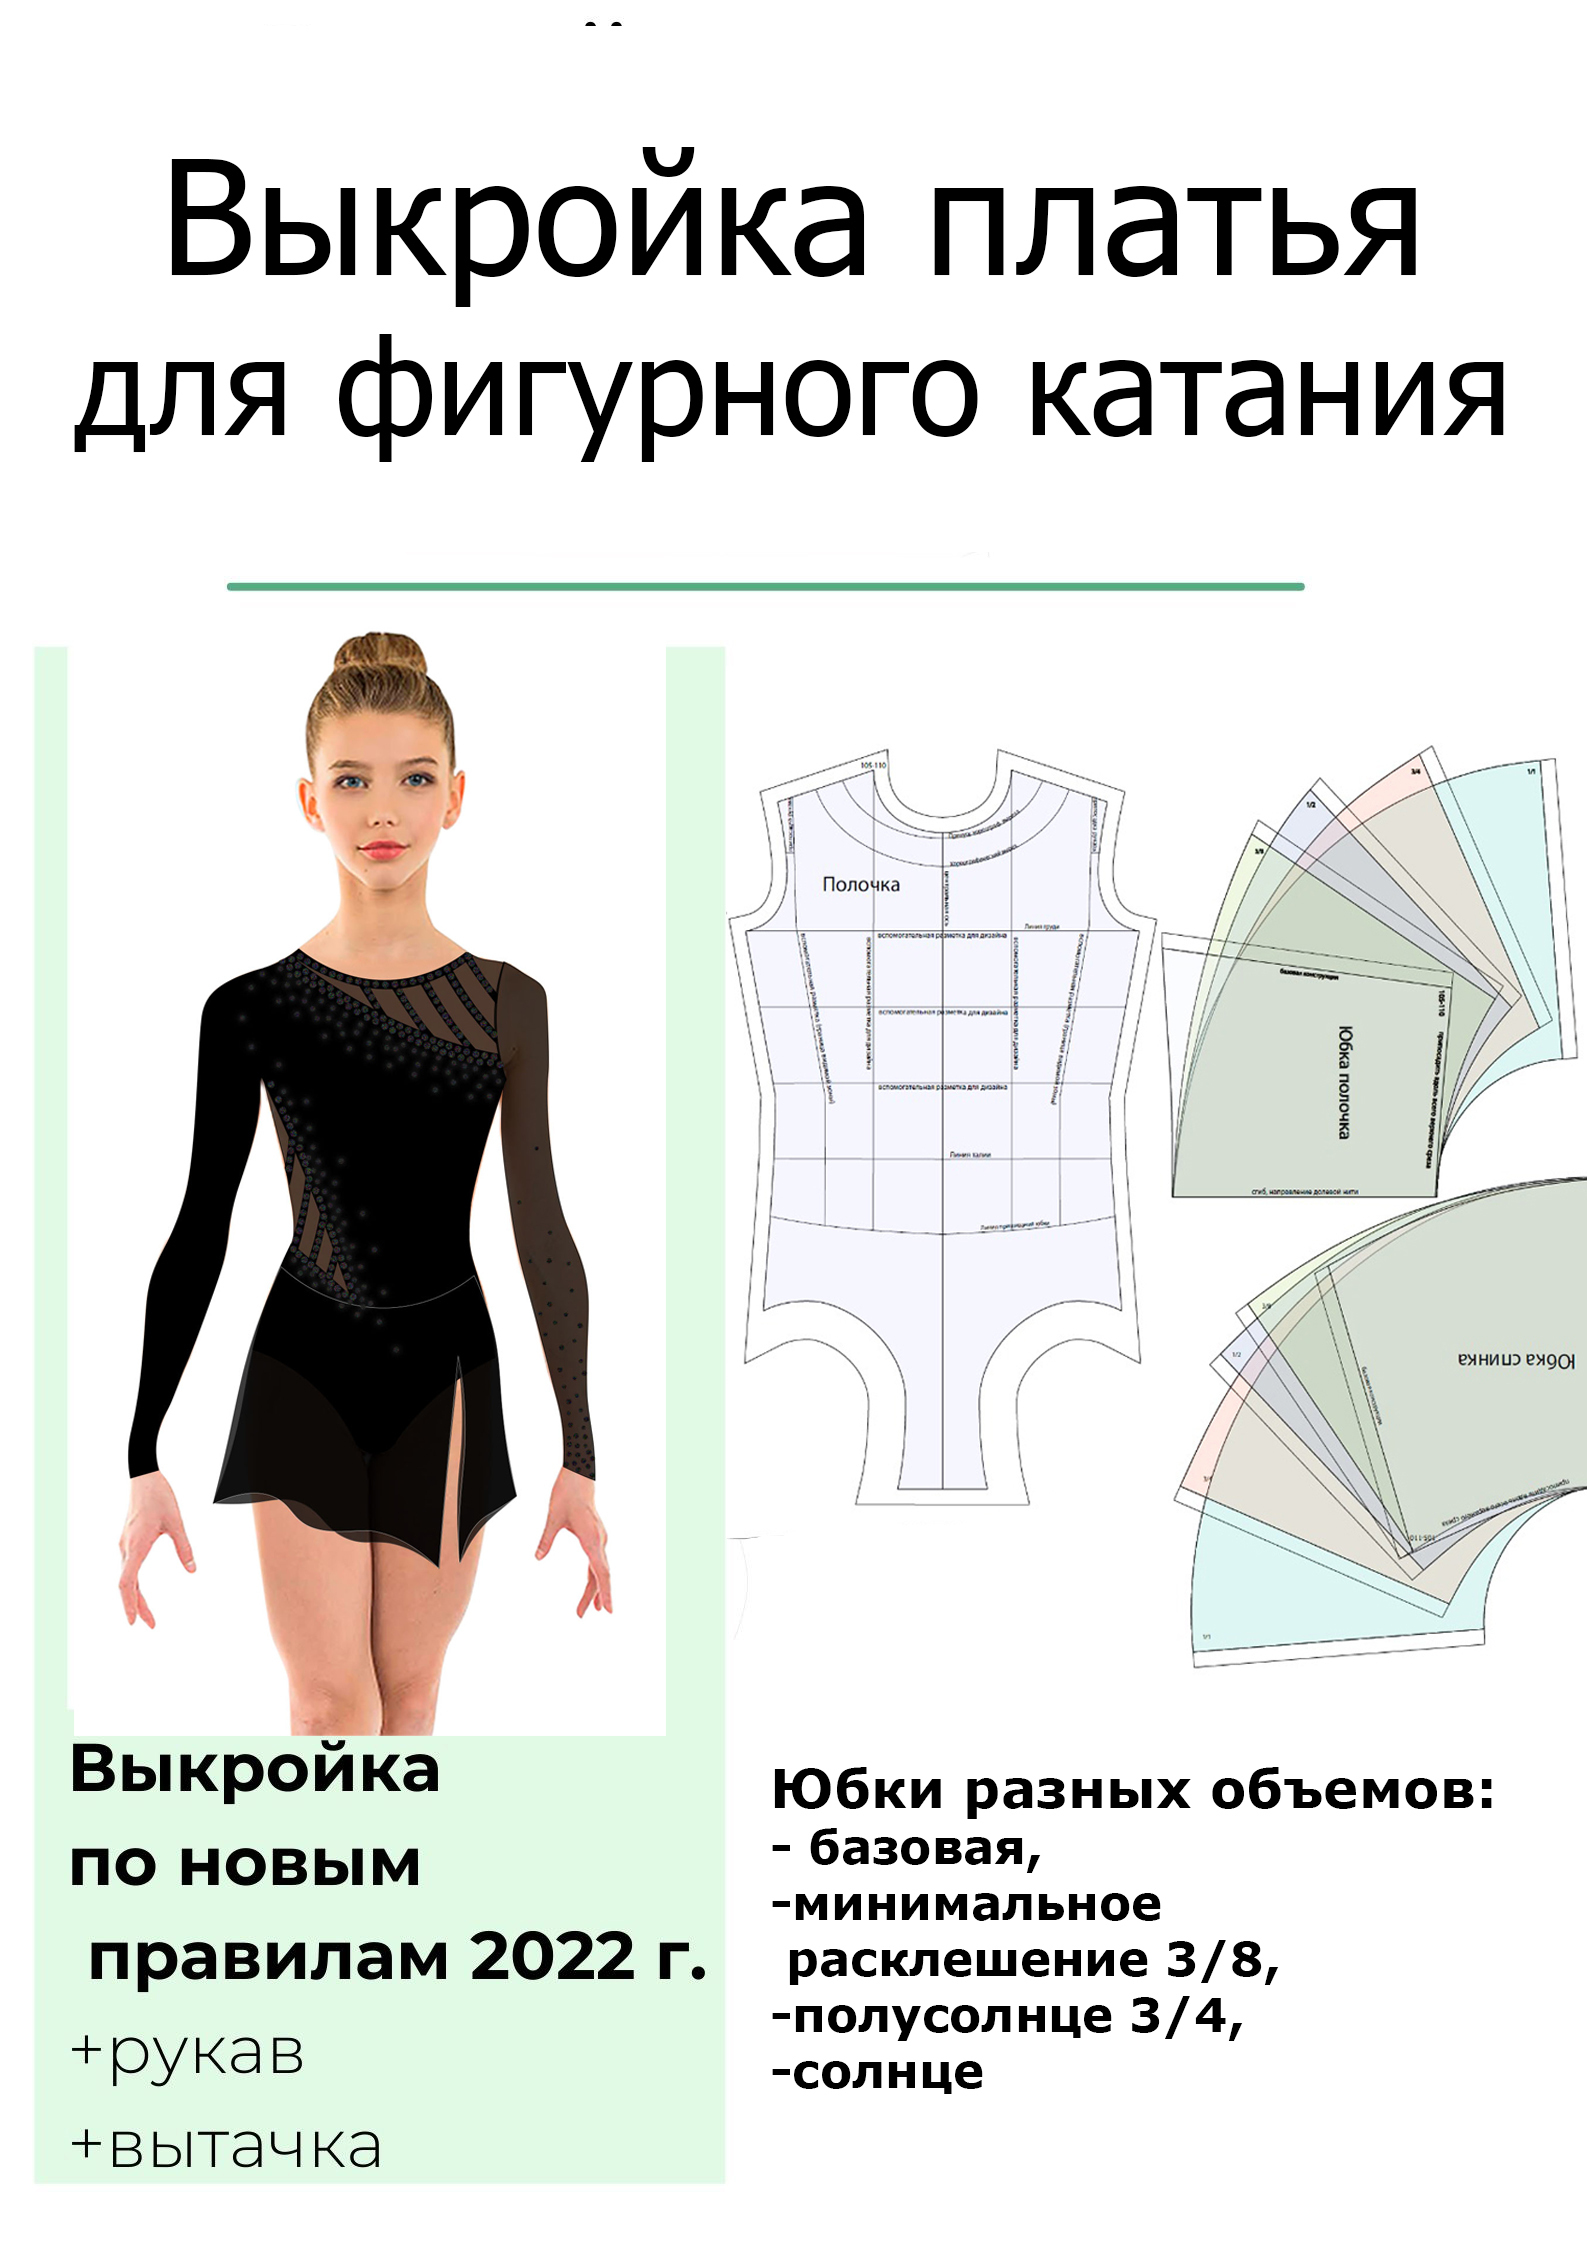 Как быстро и просто построить выкройку юбки клеш разной степени расклешения | VK